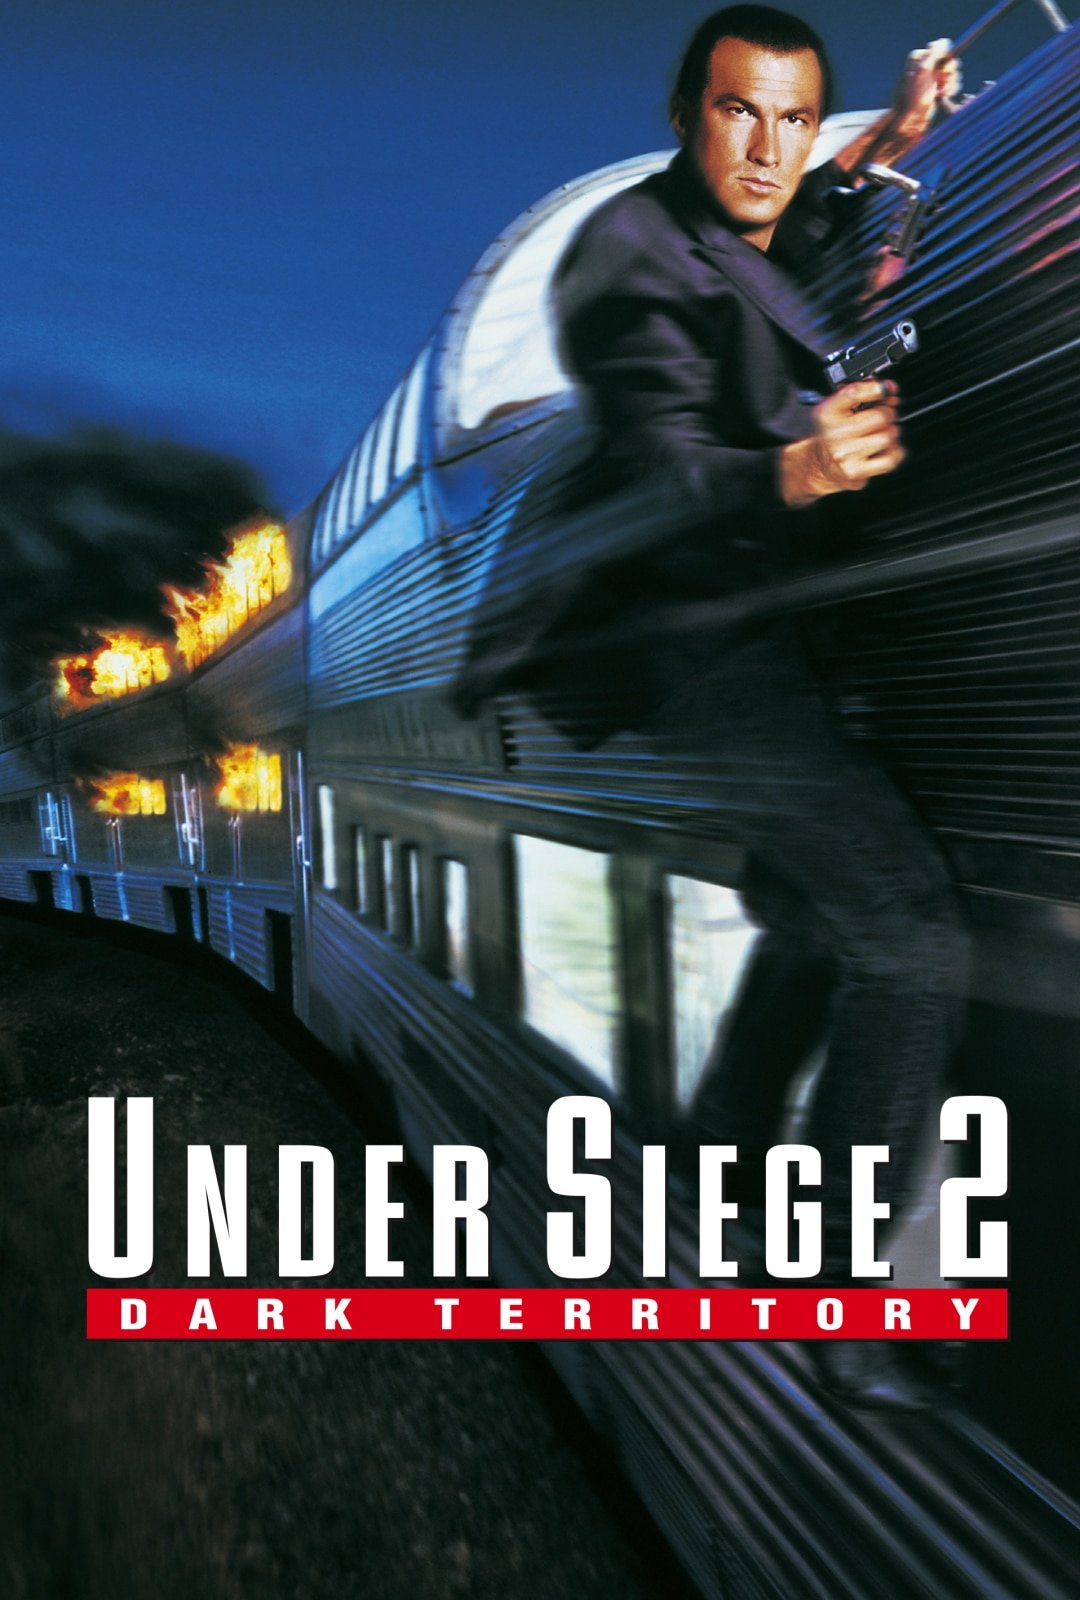 Under Siege 2